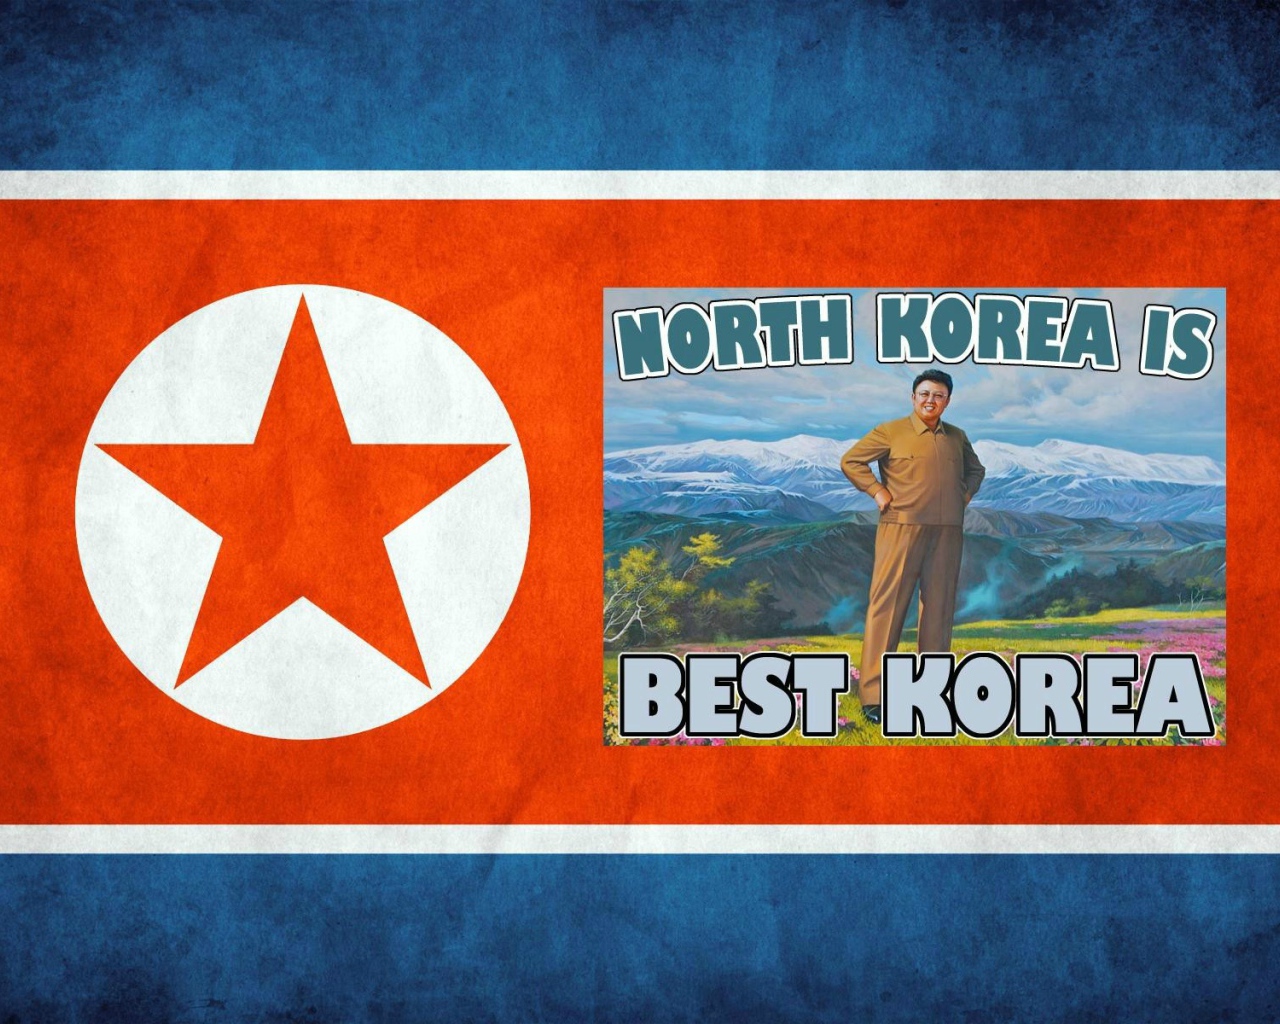 Лучшая Корея это Северная Корея